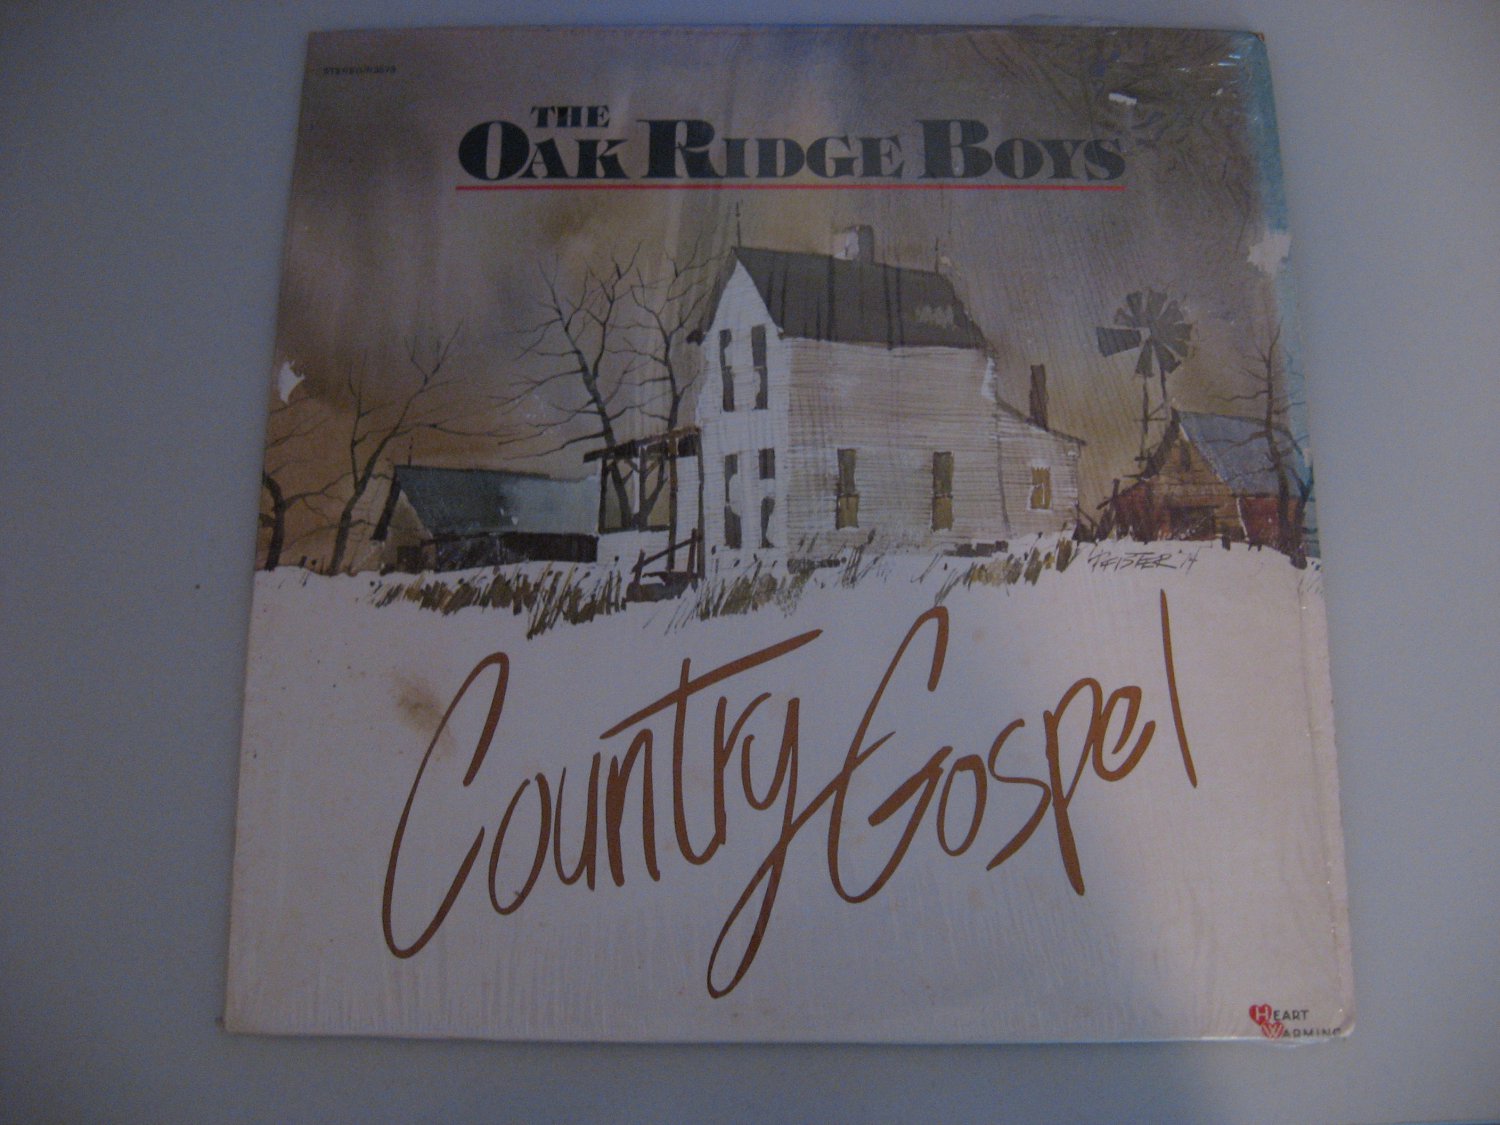 The Oak Ridge Boys - Country Gospel - Circa 1979